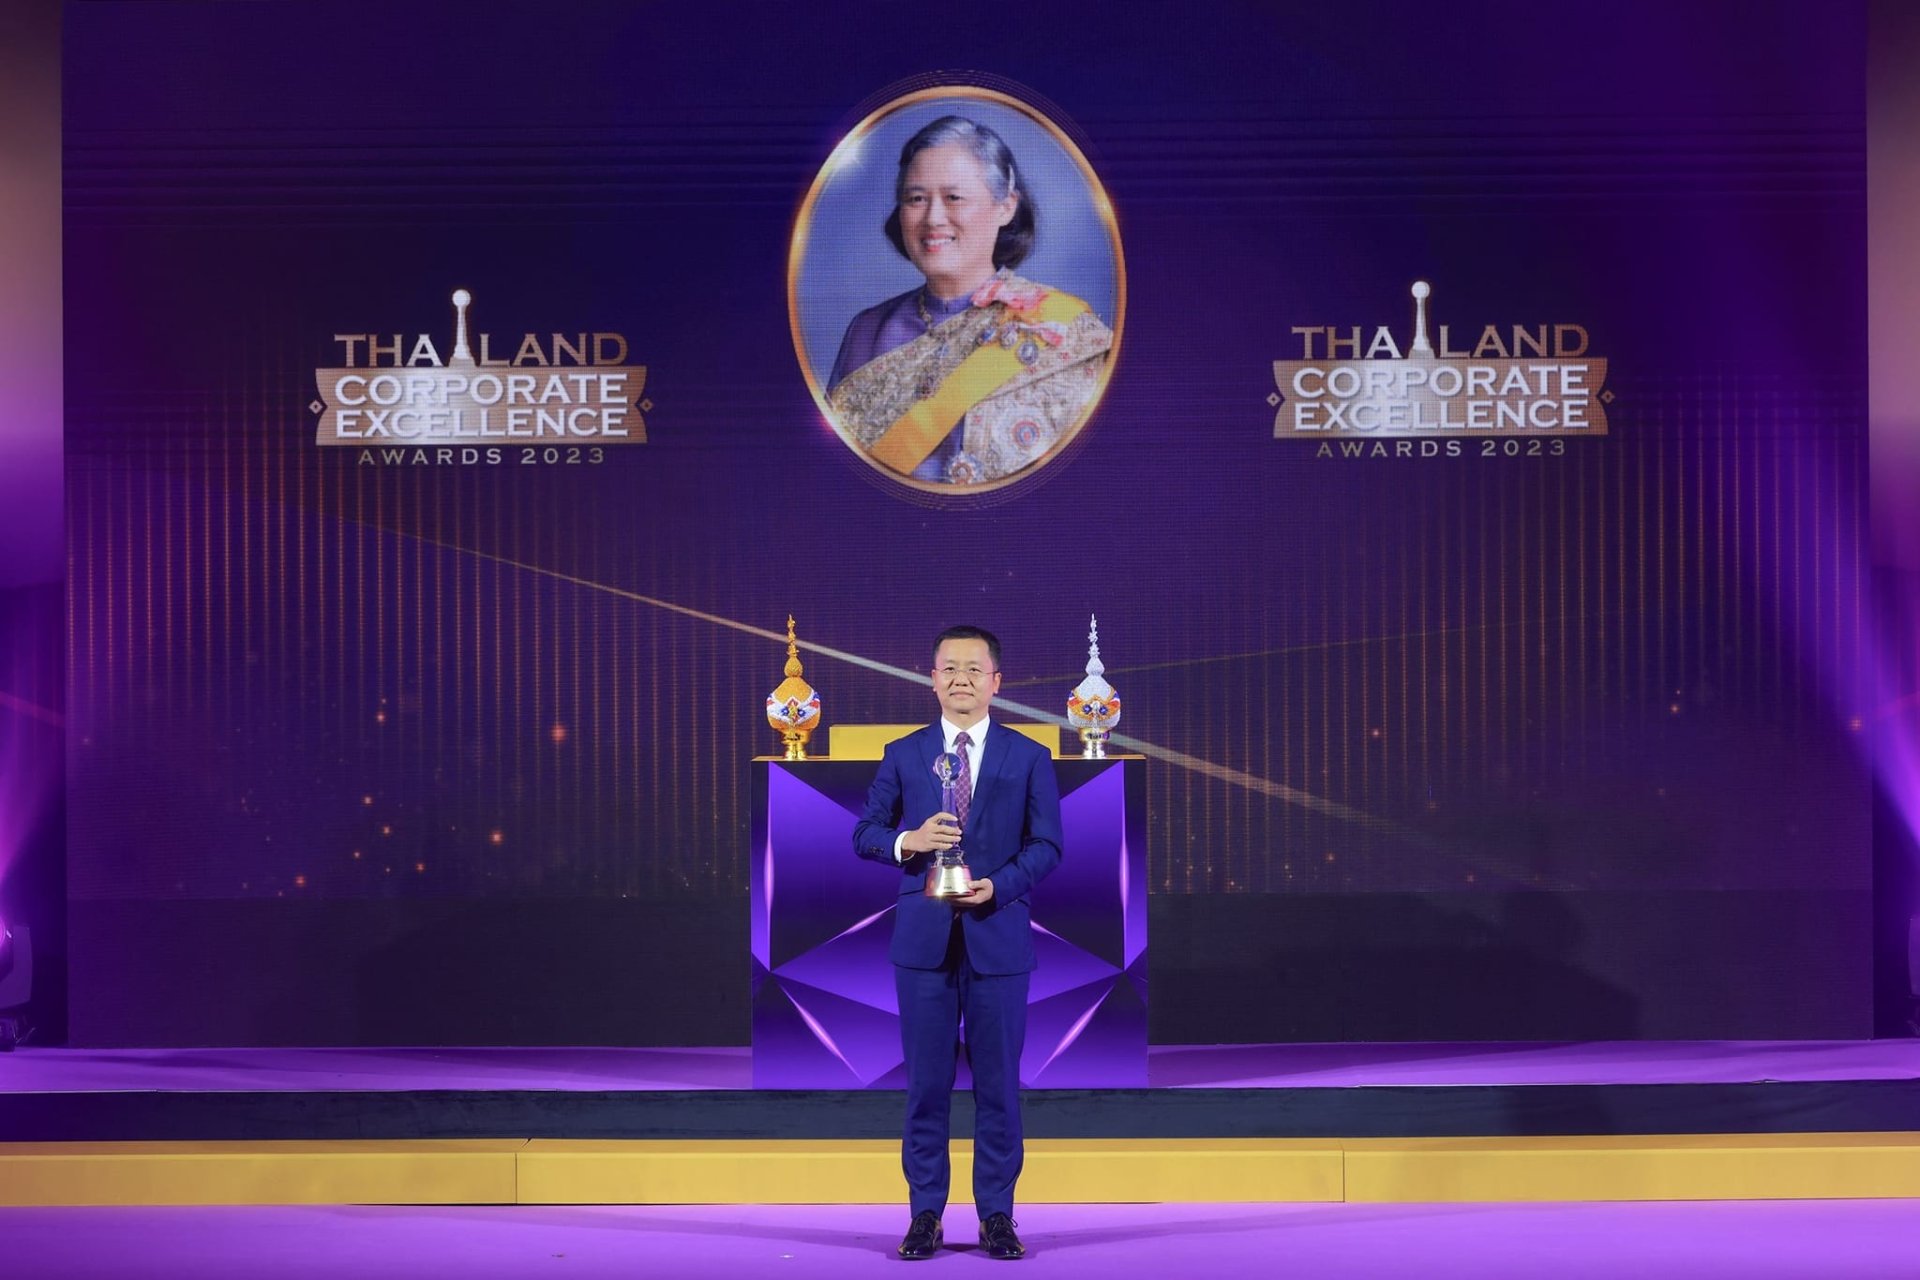 "หัวเว่ย ประเทศไทย" รับรางวัลพระราชทานอันทรงเกียรติ “Thailand Corporate Excellence Awards 2023” 